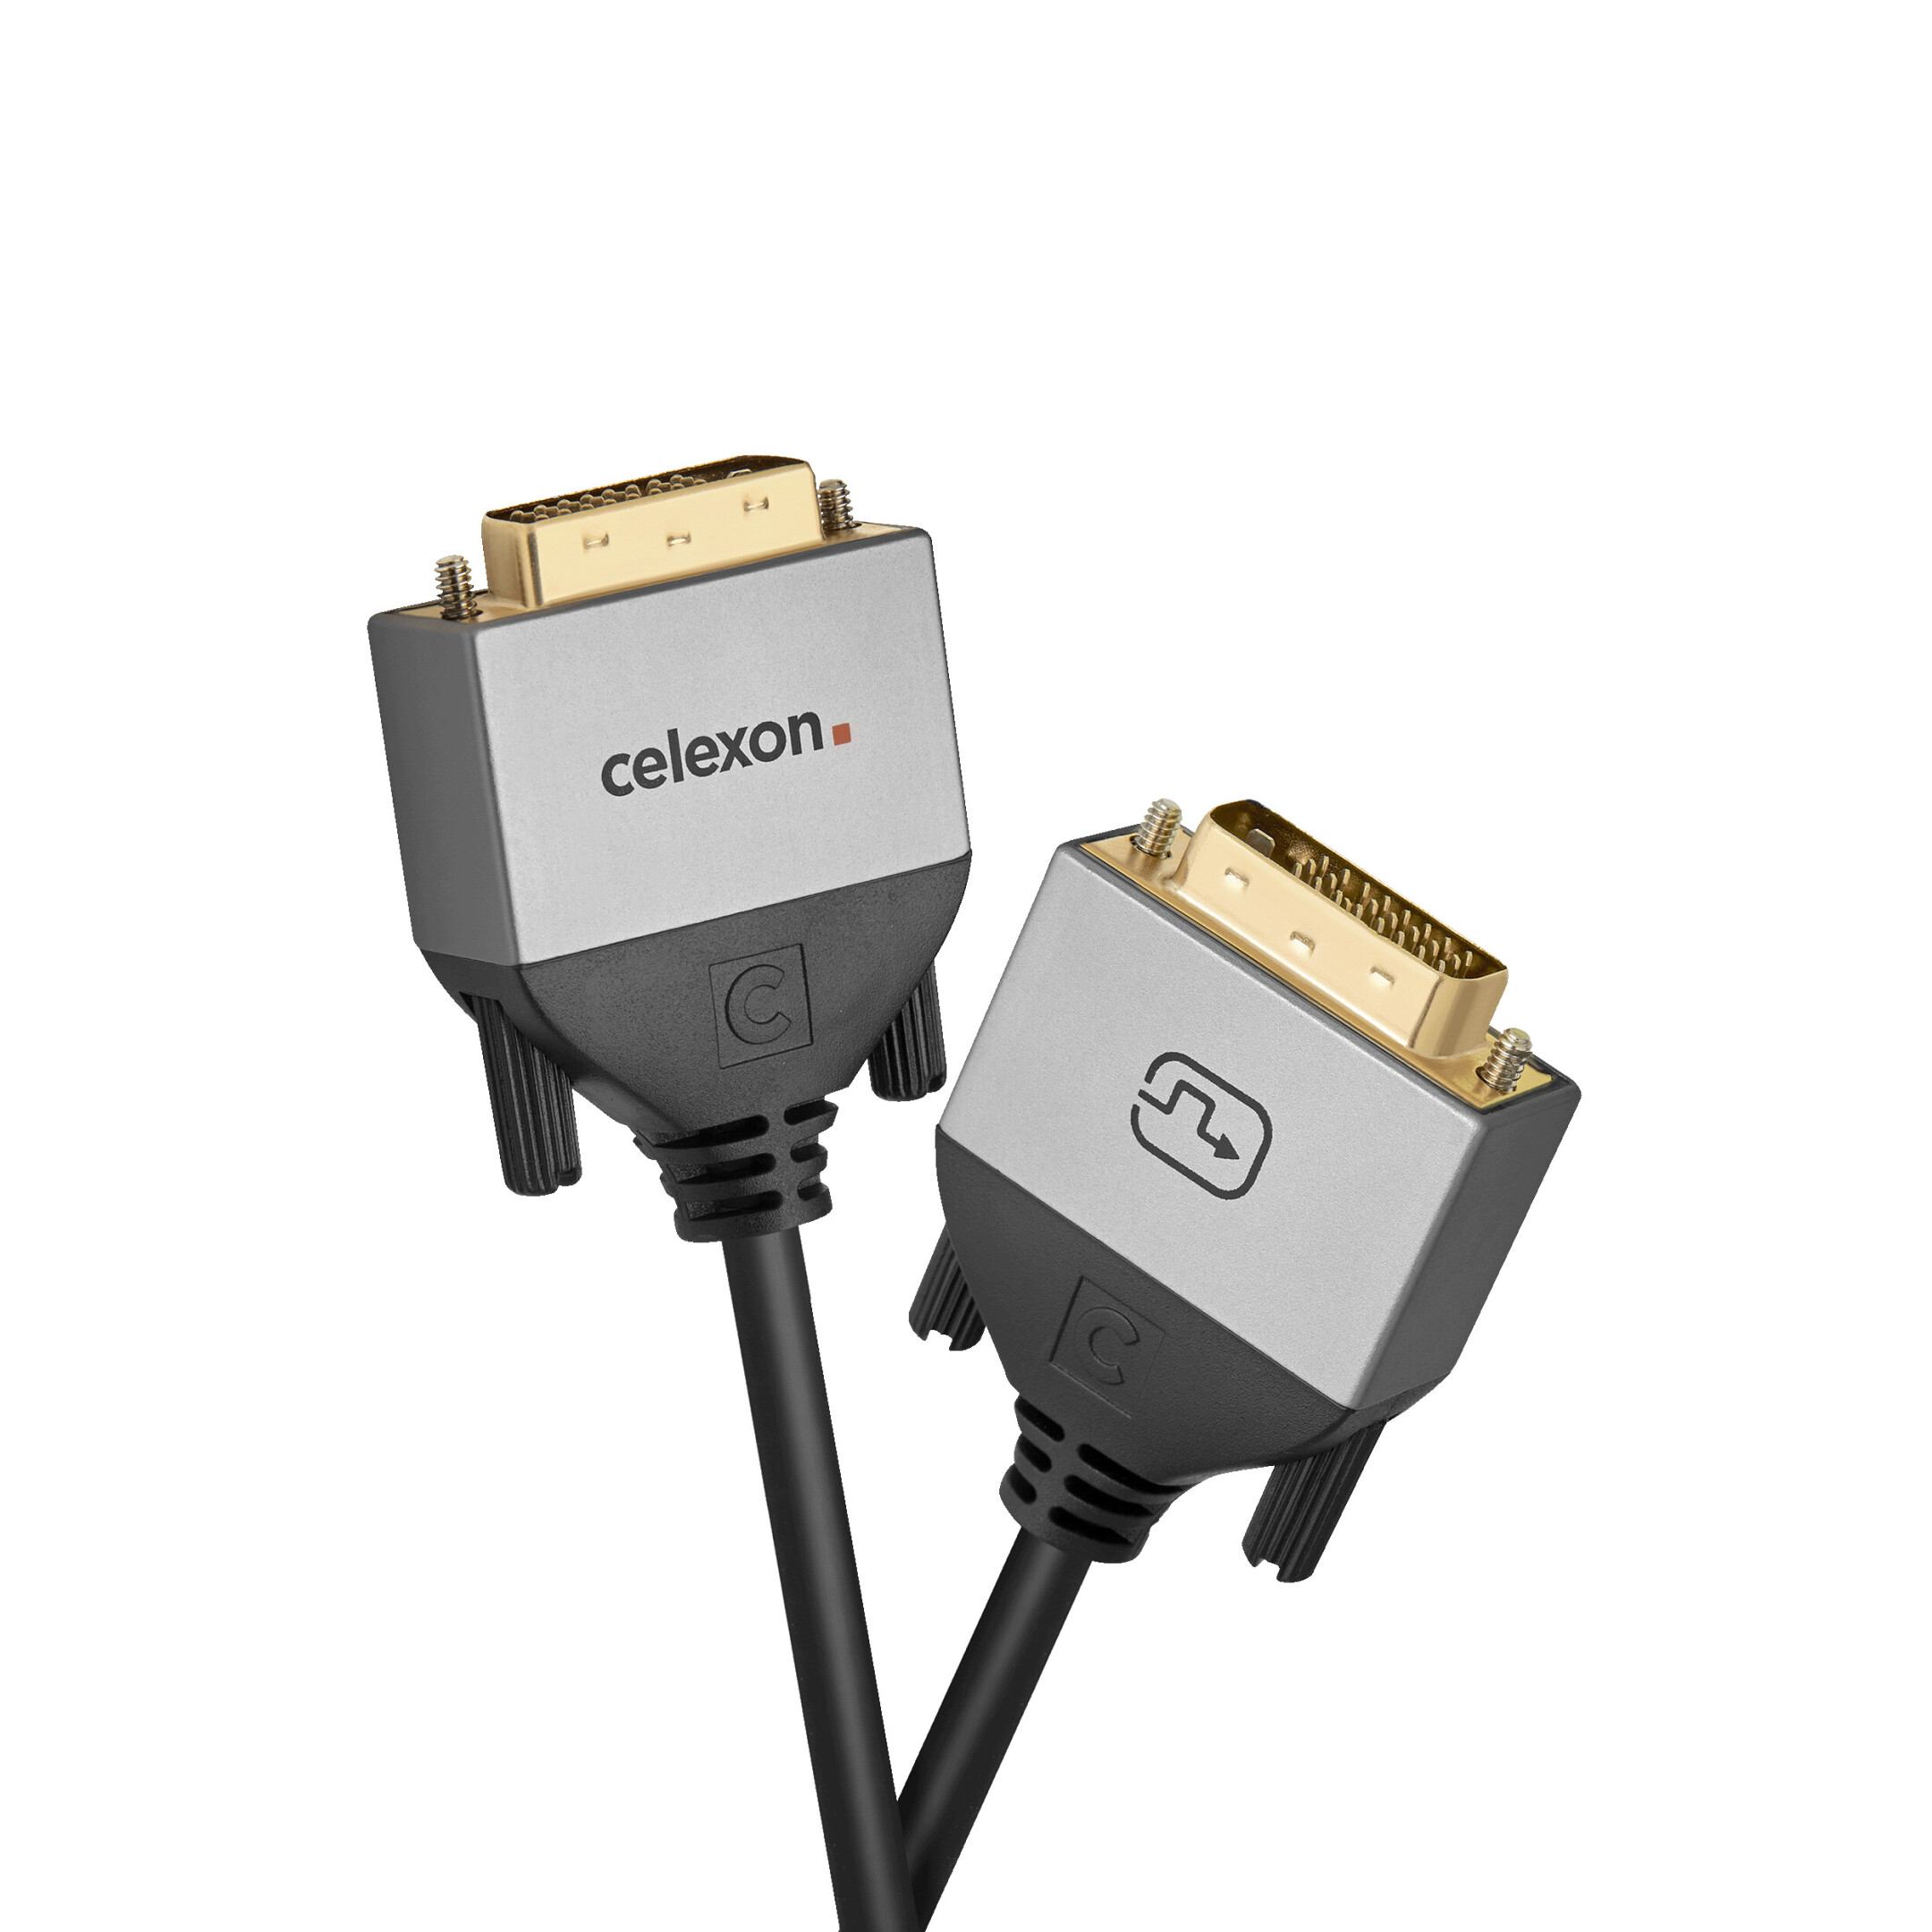 celexon-DVI-Dual-Link-Kabel-3-0m-Professional-Line